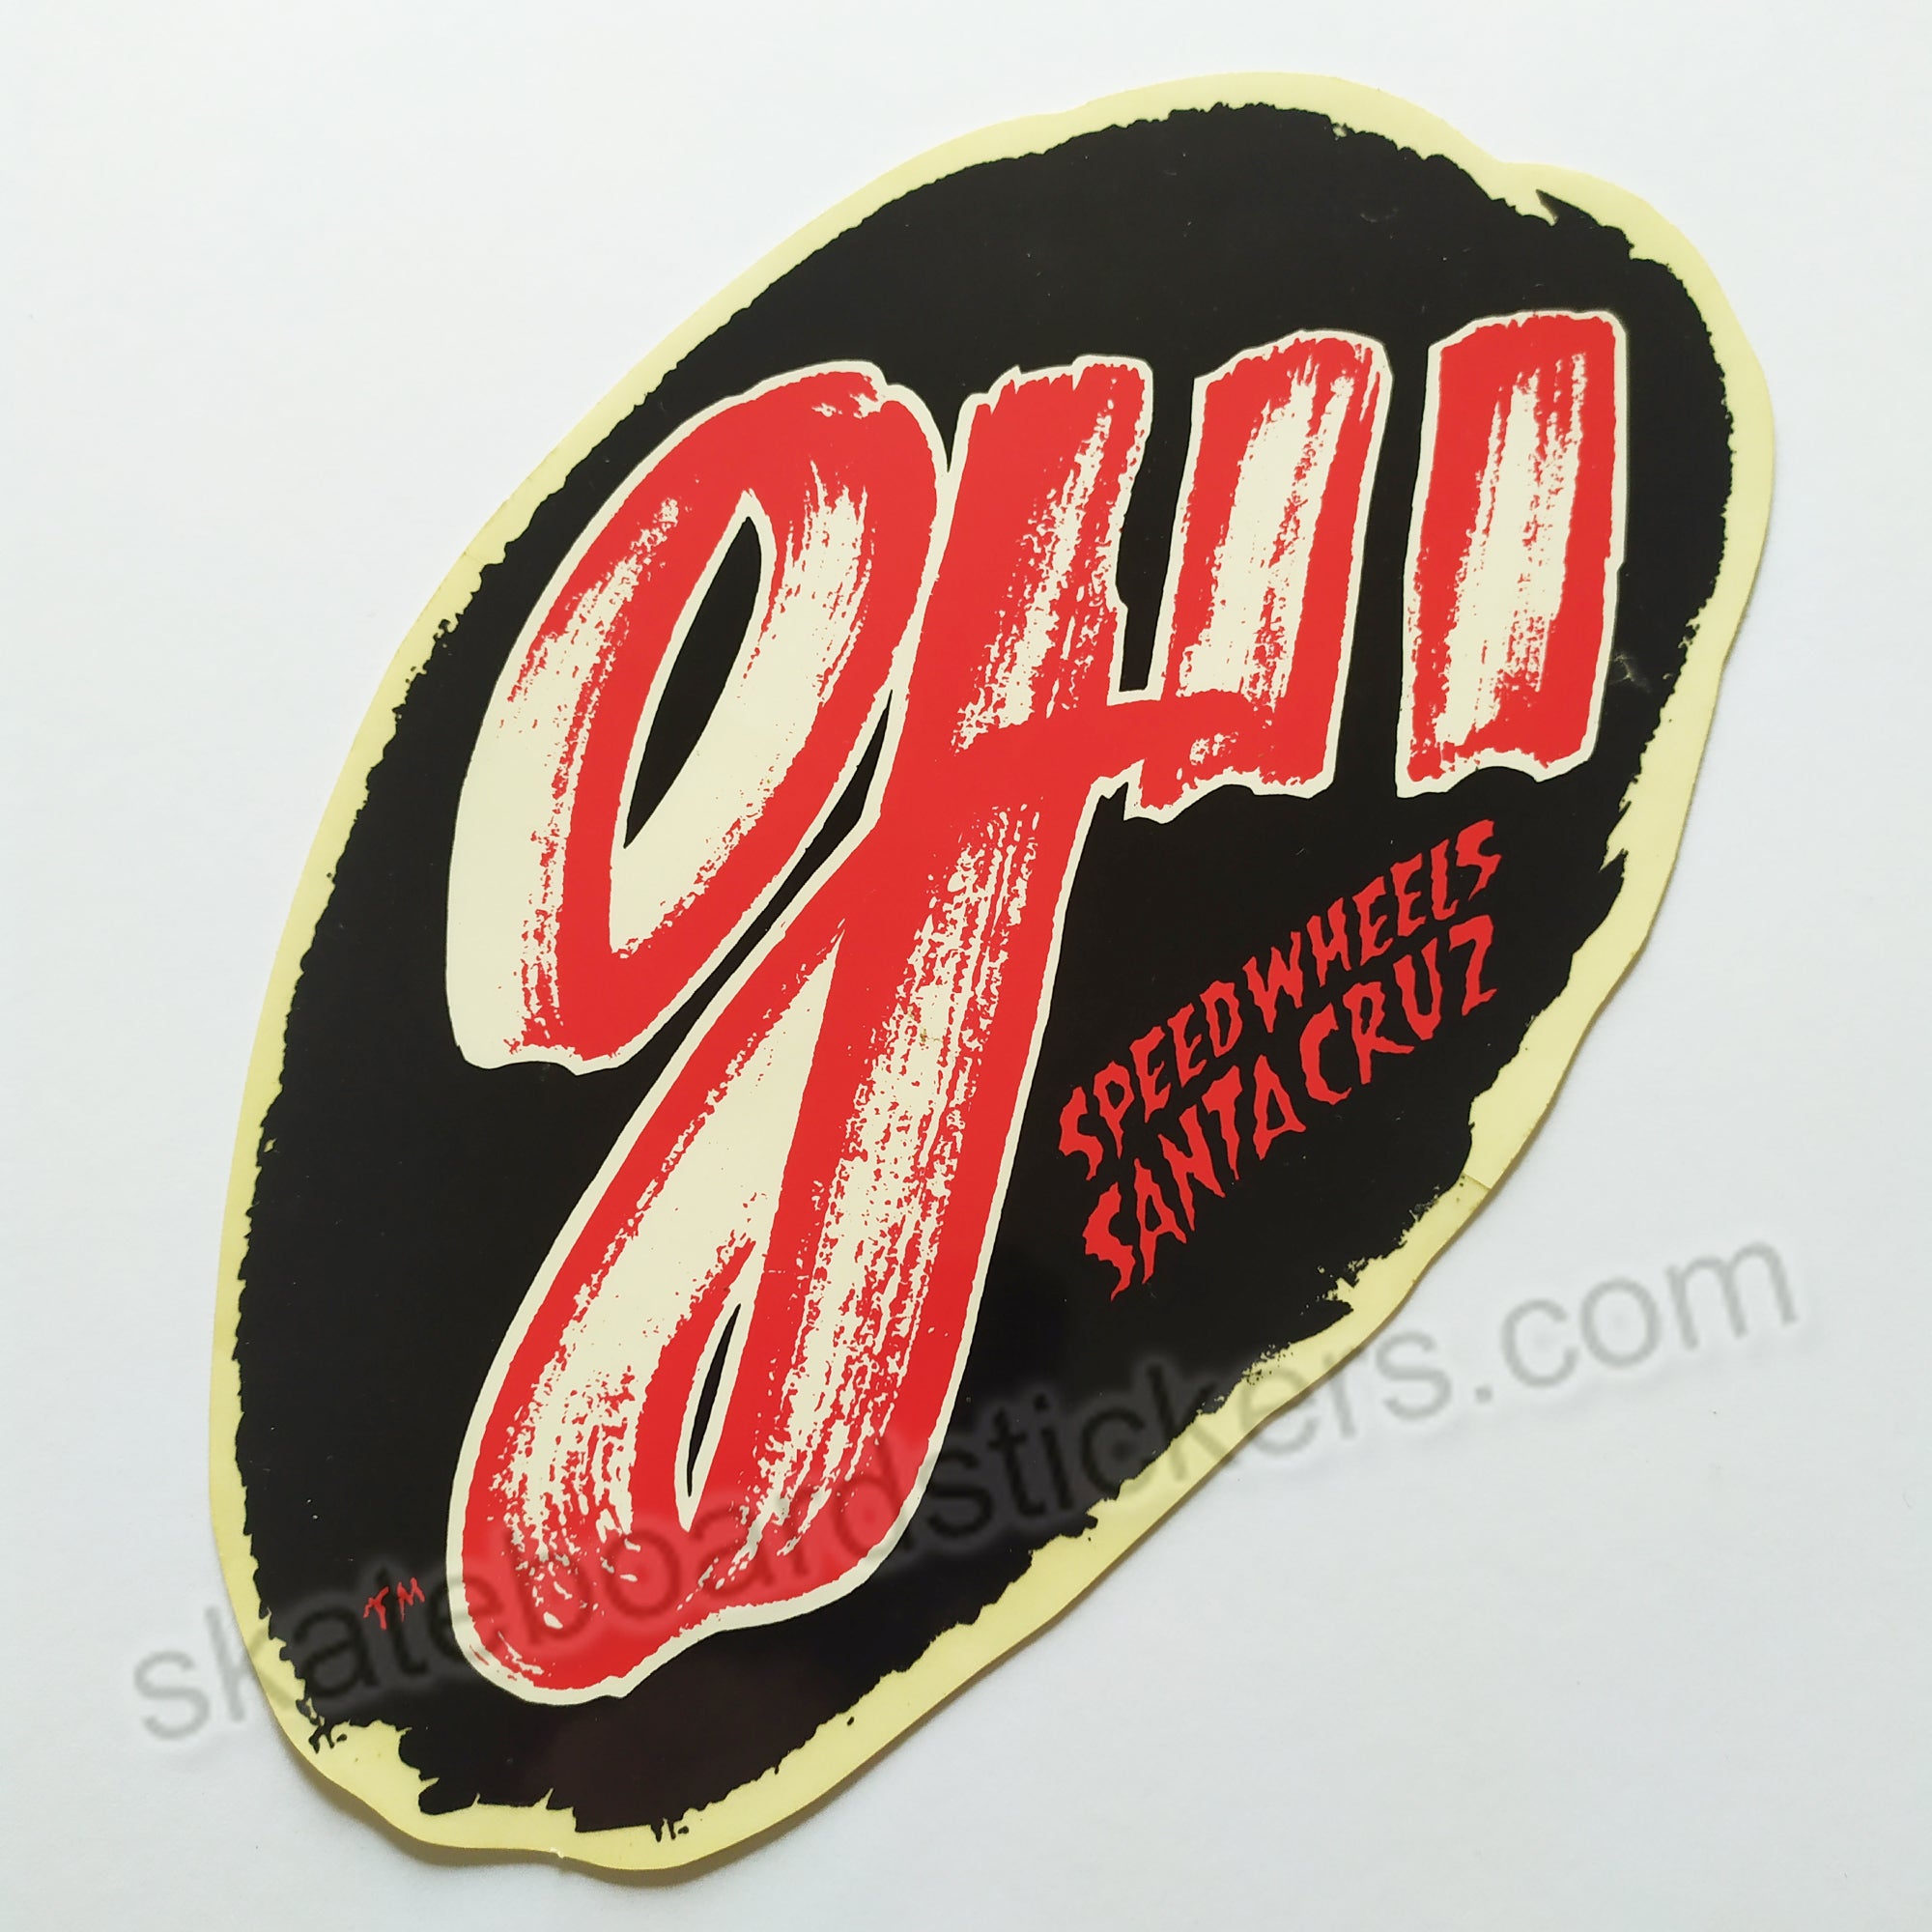 OJ II Speed Wheels Skateboard Sticker - Original from the 80s